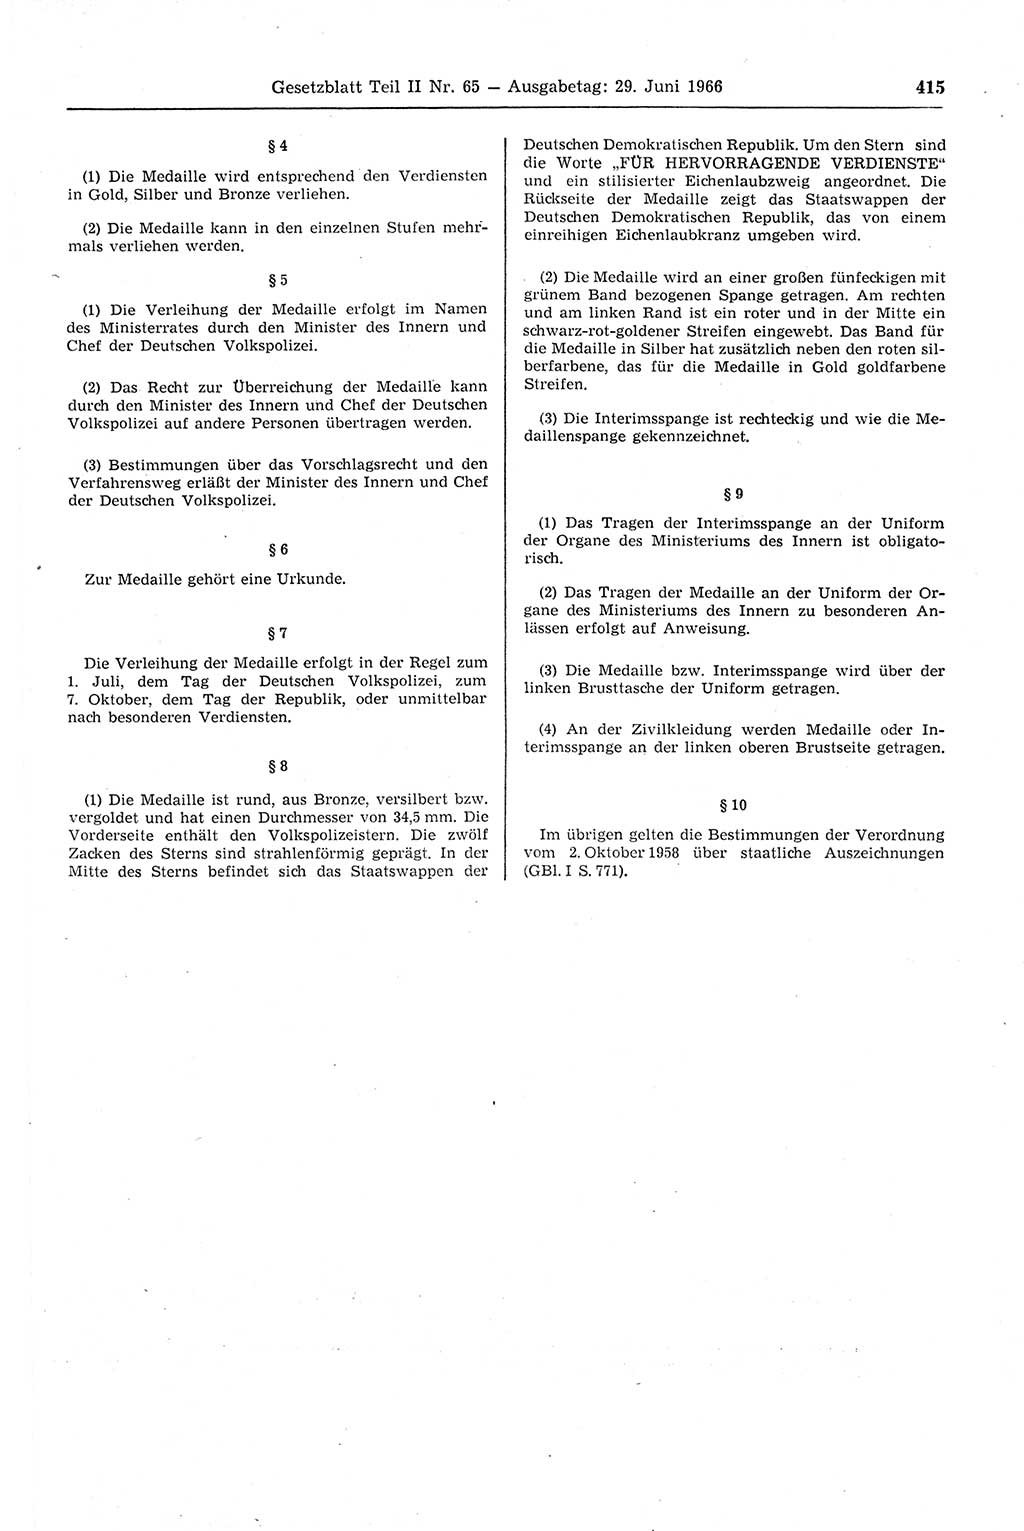 Gesetzblatt (GBl.) der Deutschen Demokratischen Republik (DDR) Teil ⅠⅠ 1966, Seite 415 (GBl. DDR ⅠⅠ 1966, S. 415)